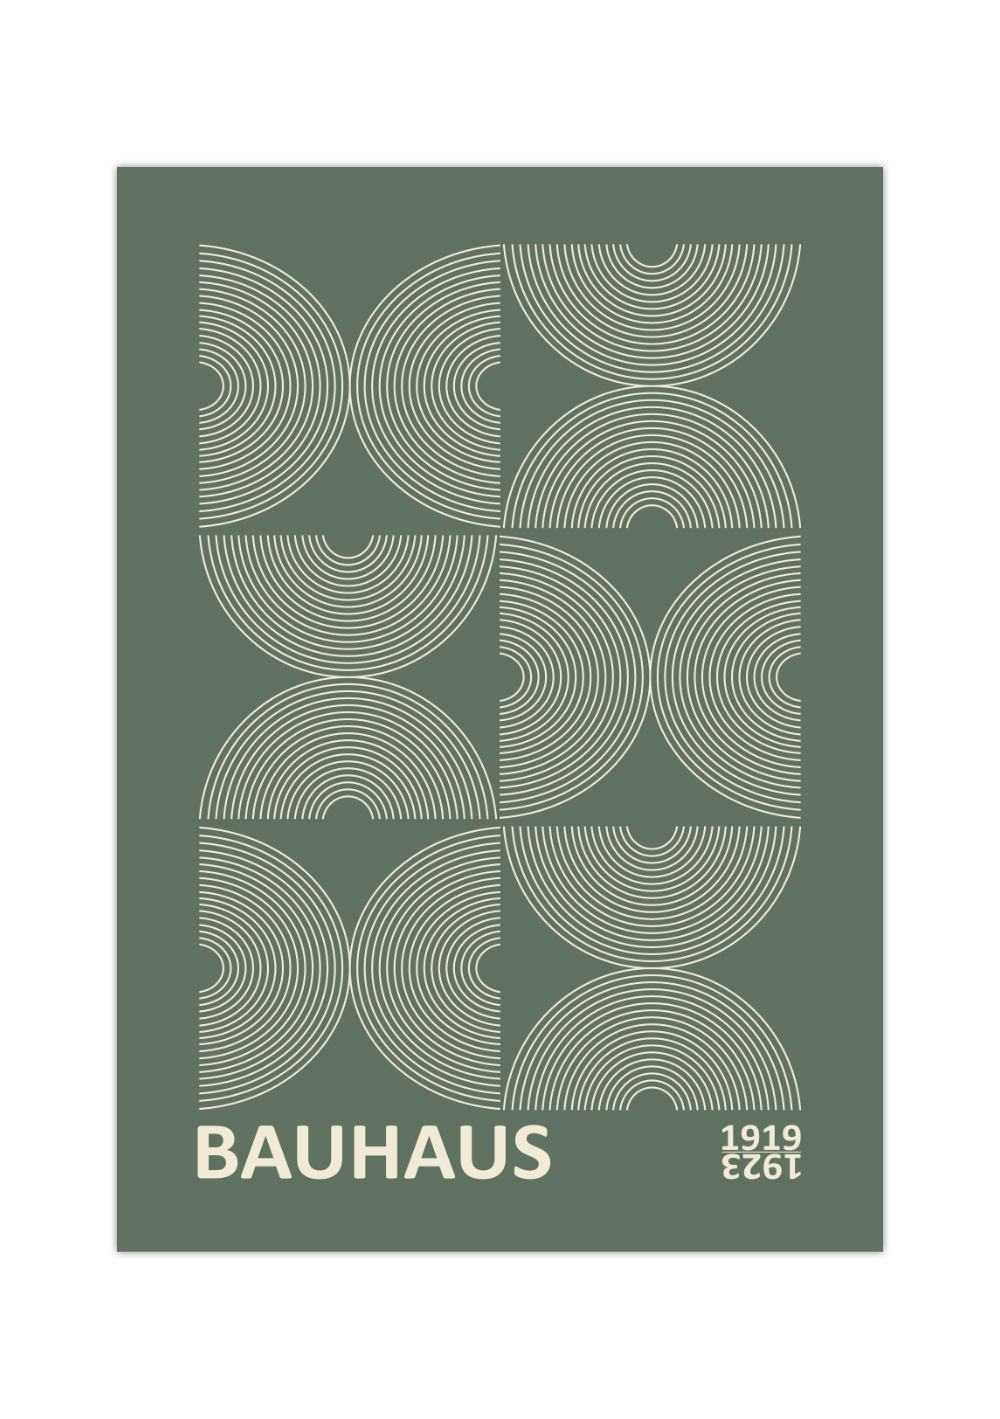 Das Bauhaus Poster zeigt dir geometrische Formen in Beige auf grünem Hintergrund. Das Poster ist einem Ausstellungsplakat von 1919 - 1923 nachempfunden, ist so aber nie erschienen. 